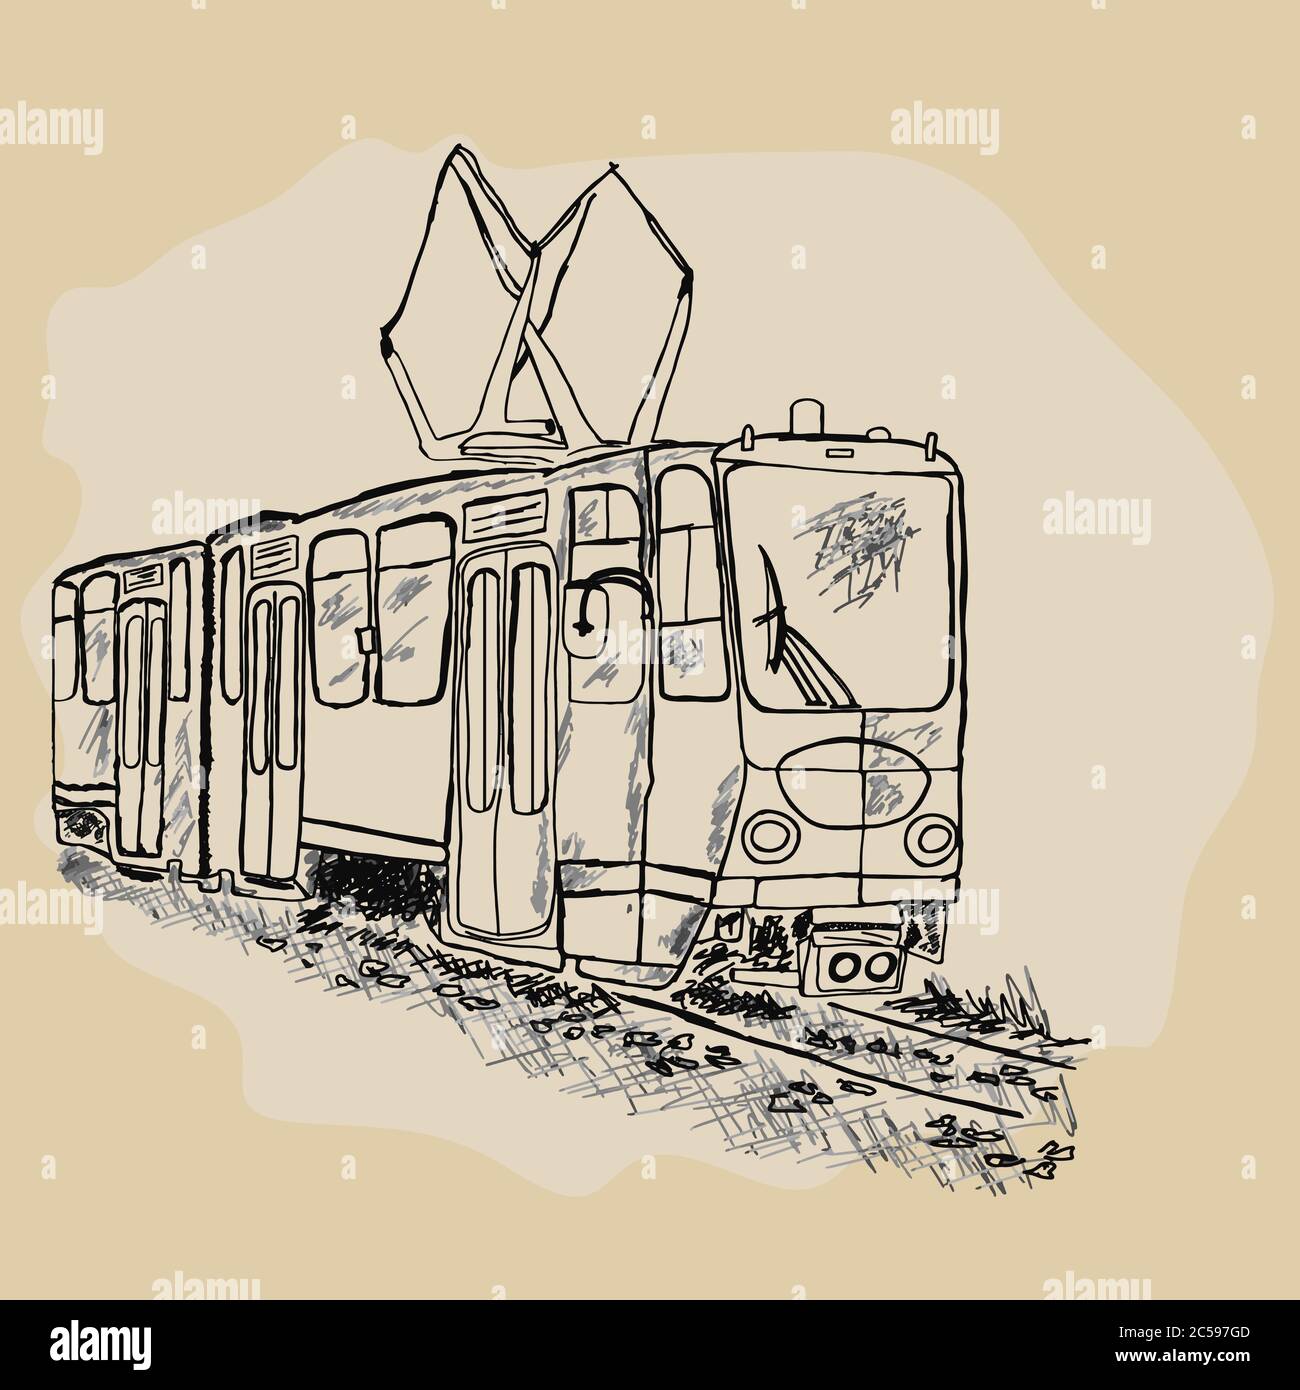 Tram isoliert auf weißem Hintergrund. Handgezeichnete Retro-Tram-Skizze. City Trolley. Passagiere, öffentliche Verkehrsmittel. Stadtobus. Stock-Vektor Stock Vektor